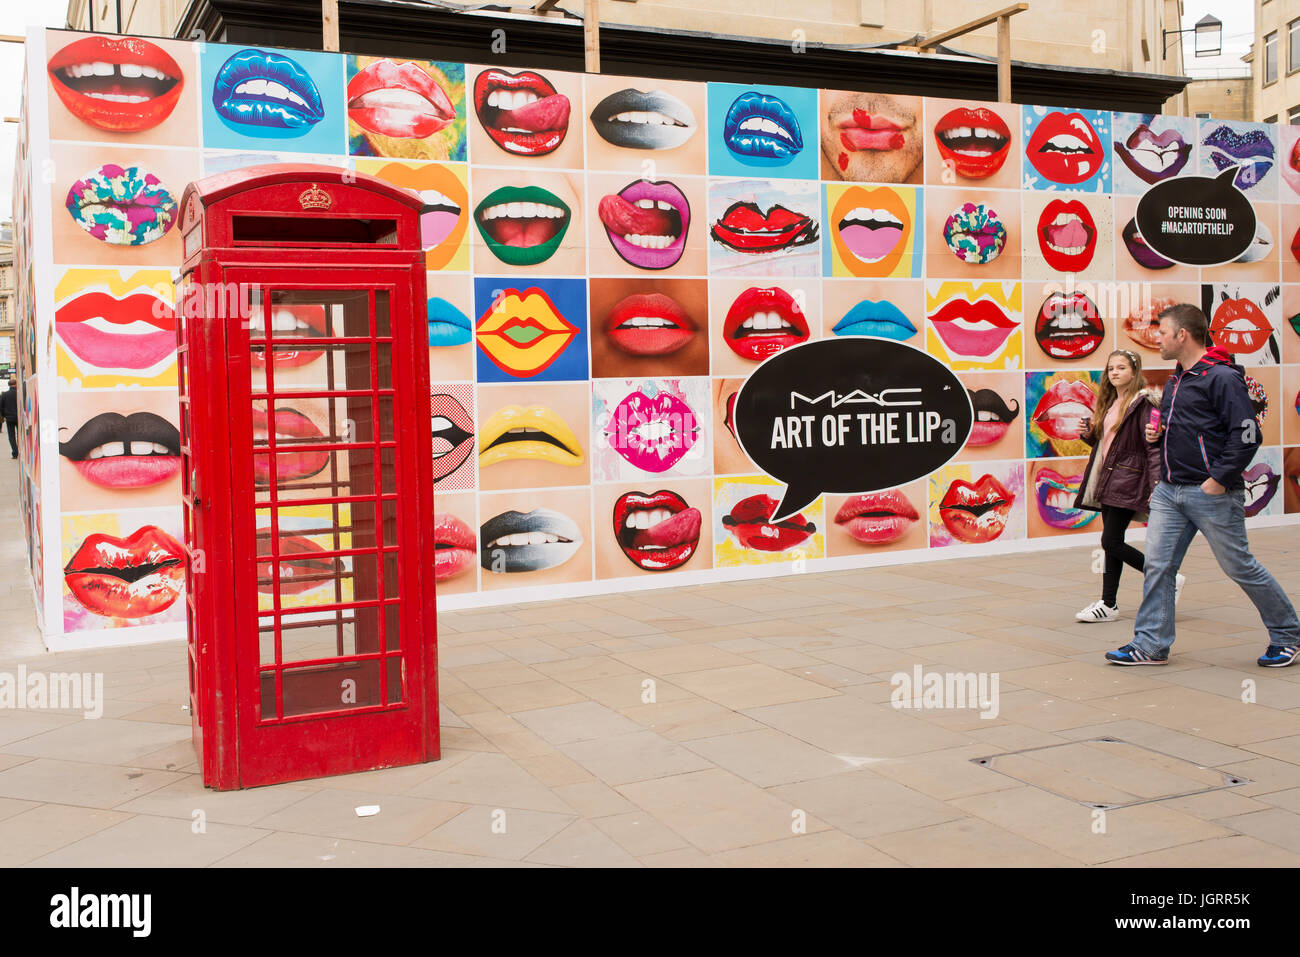 Grand panneau sur UK high street plein de bouche avec du rouge à lèvres à côté d'une cabine téléphonique rouge MAC publicité cosmétique, comme stylisé M·A·C, un fabricant de cosmétiques Banque D'Images